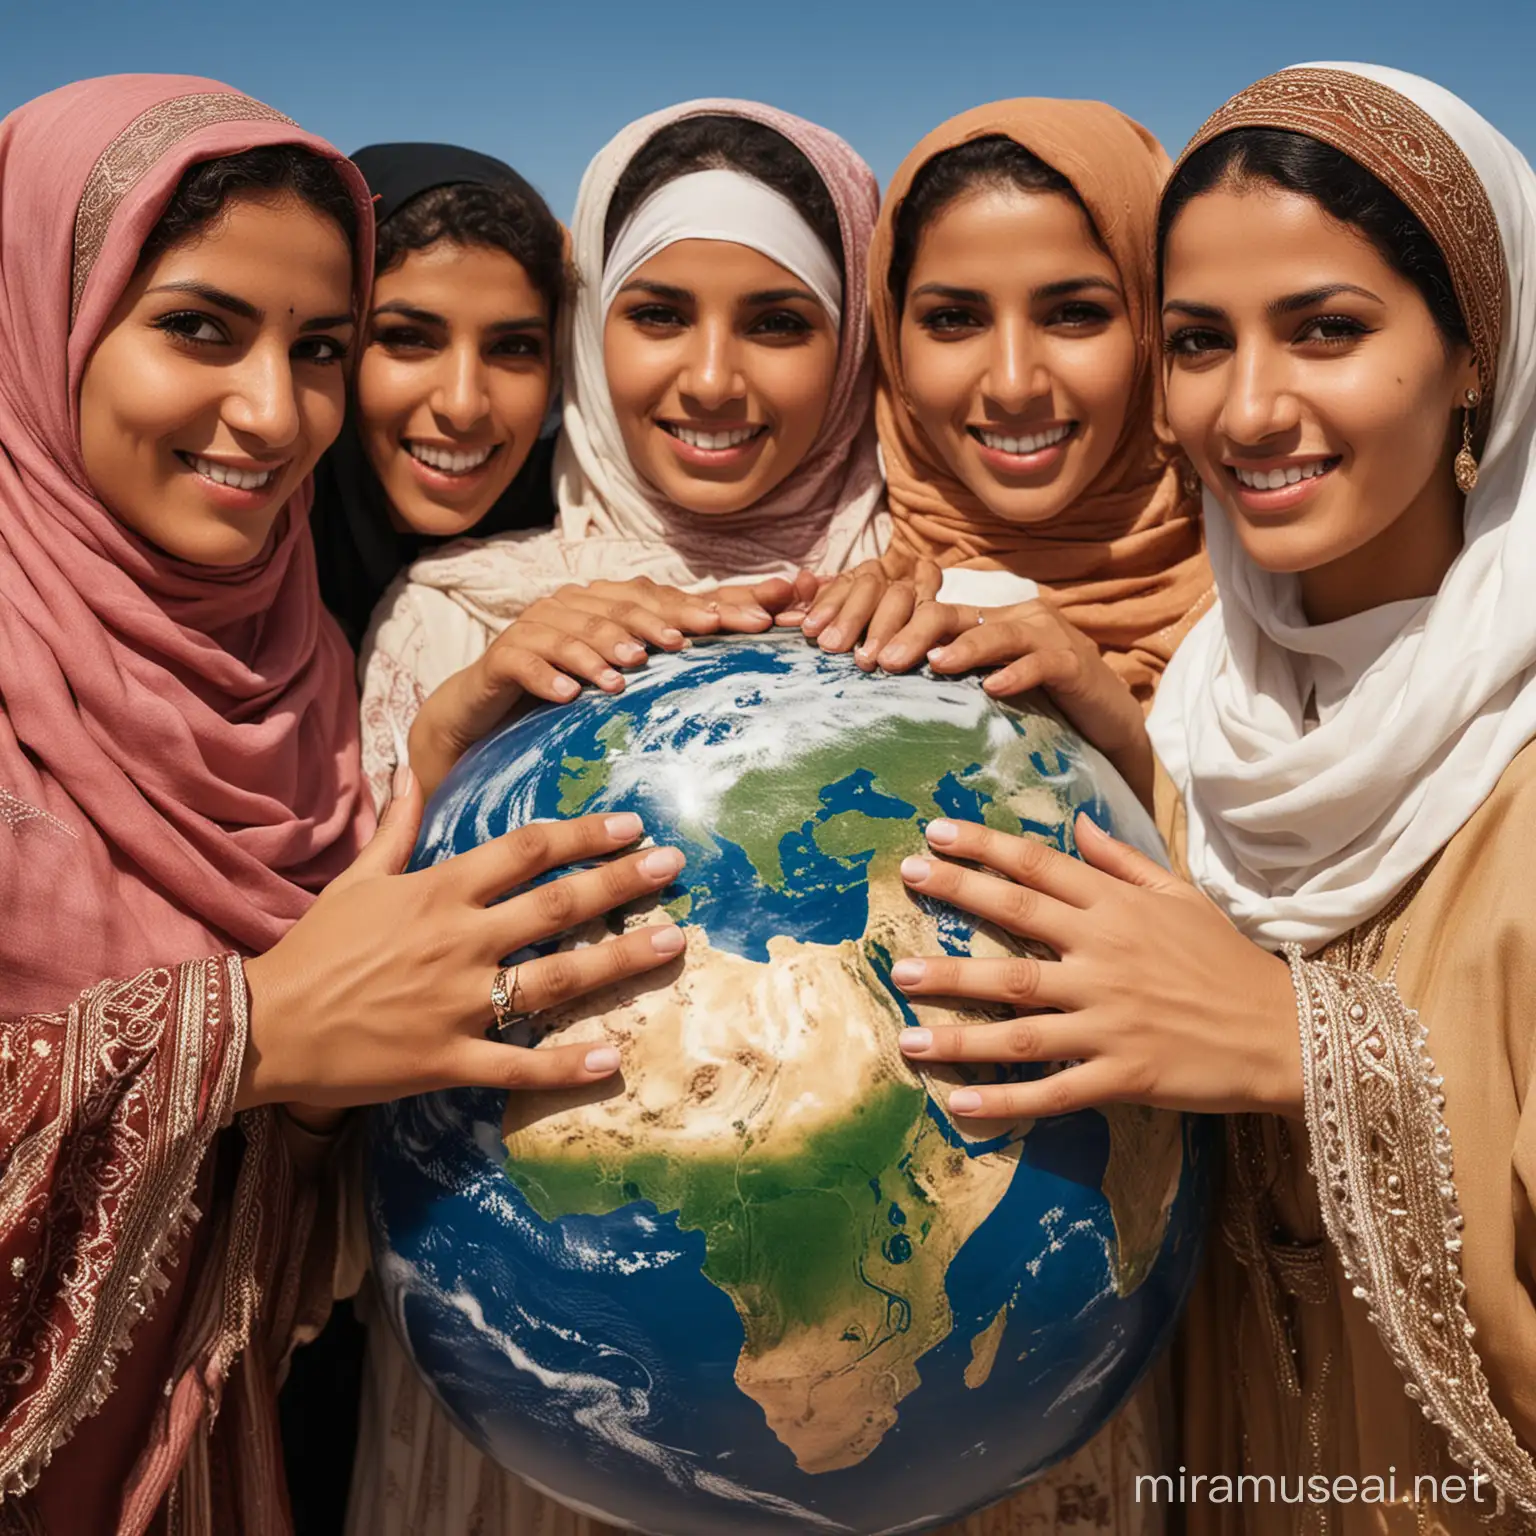 Femmes du maghreb avec un regard fière et doux à la fois se tenant la main autour de la terre